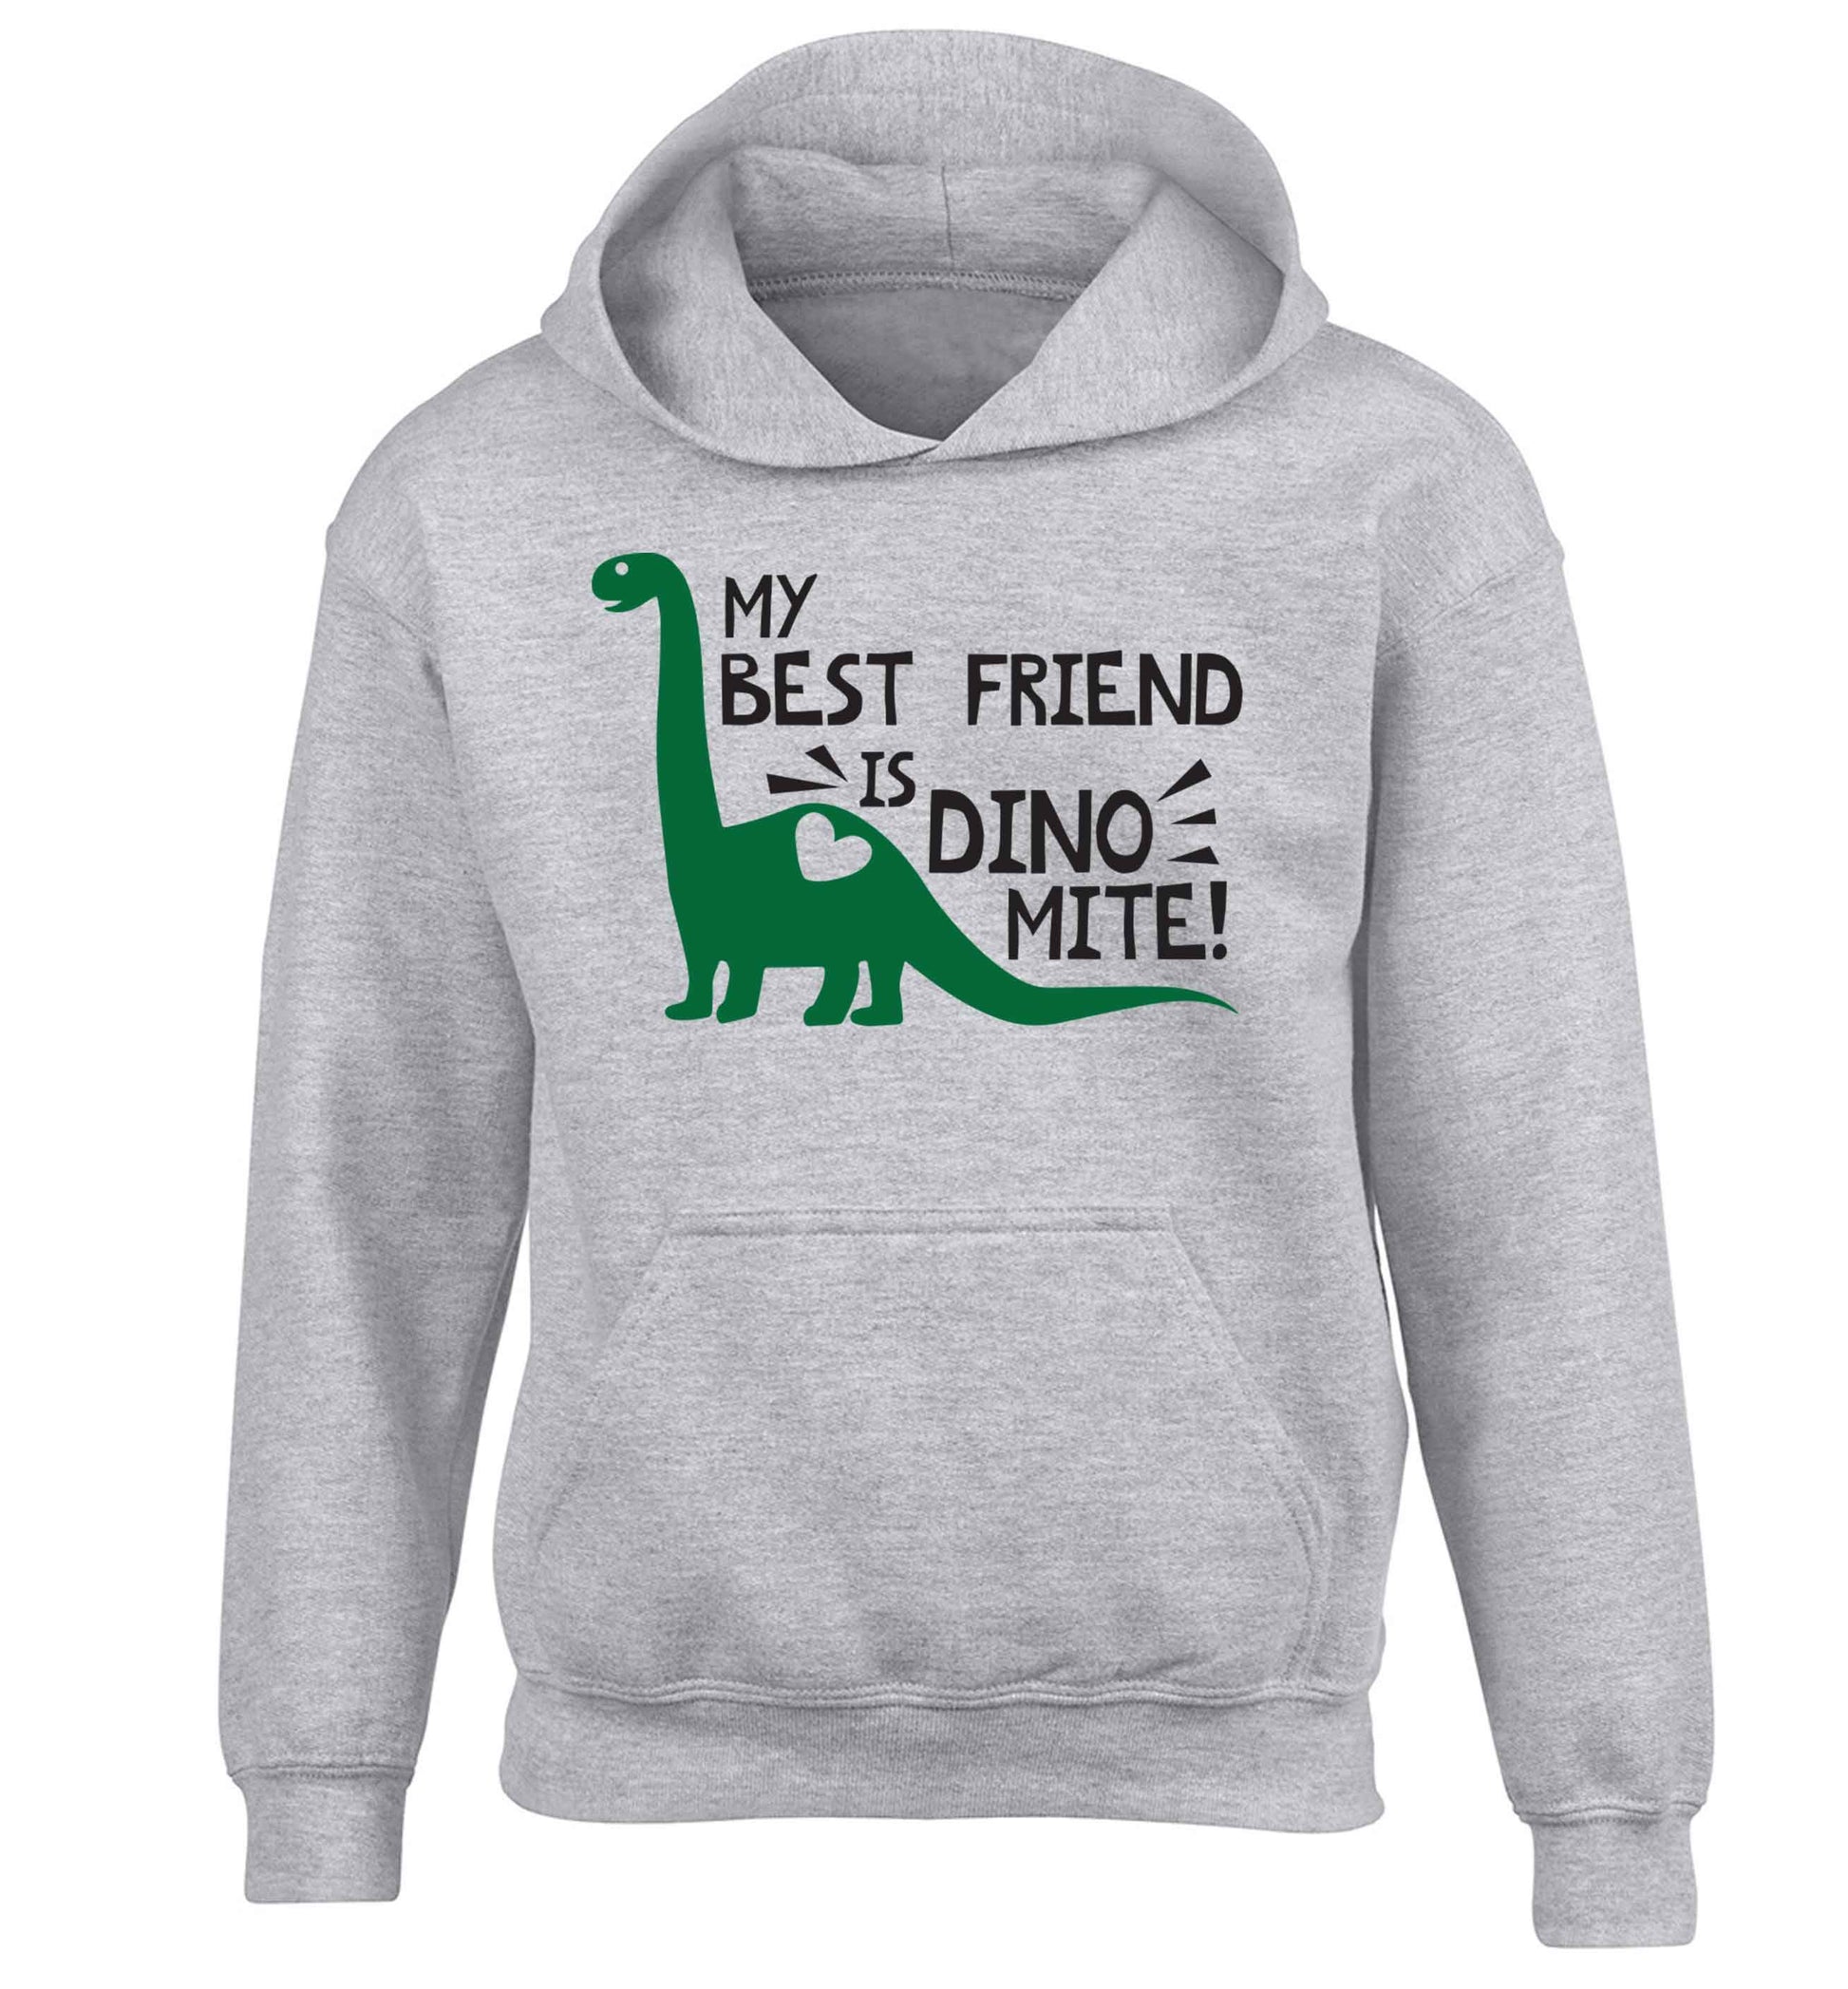 My best friend is dinomite! children's grey hoodie 12-13 Years